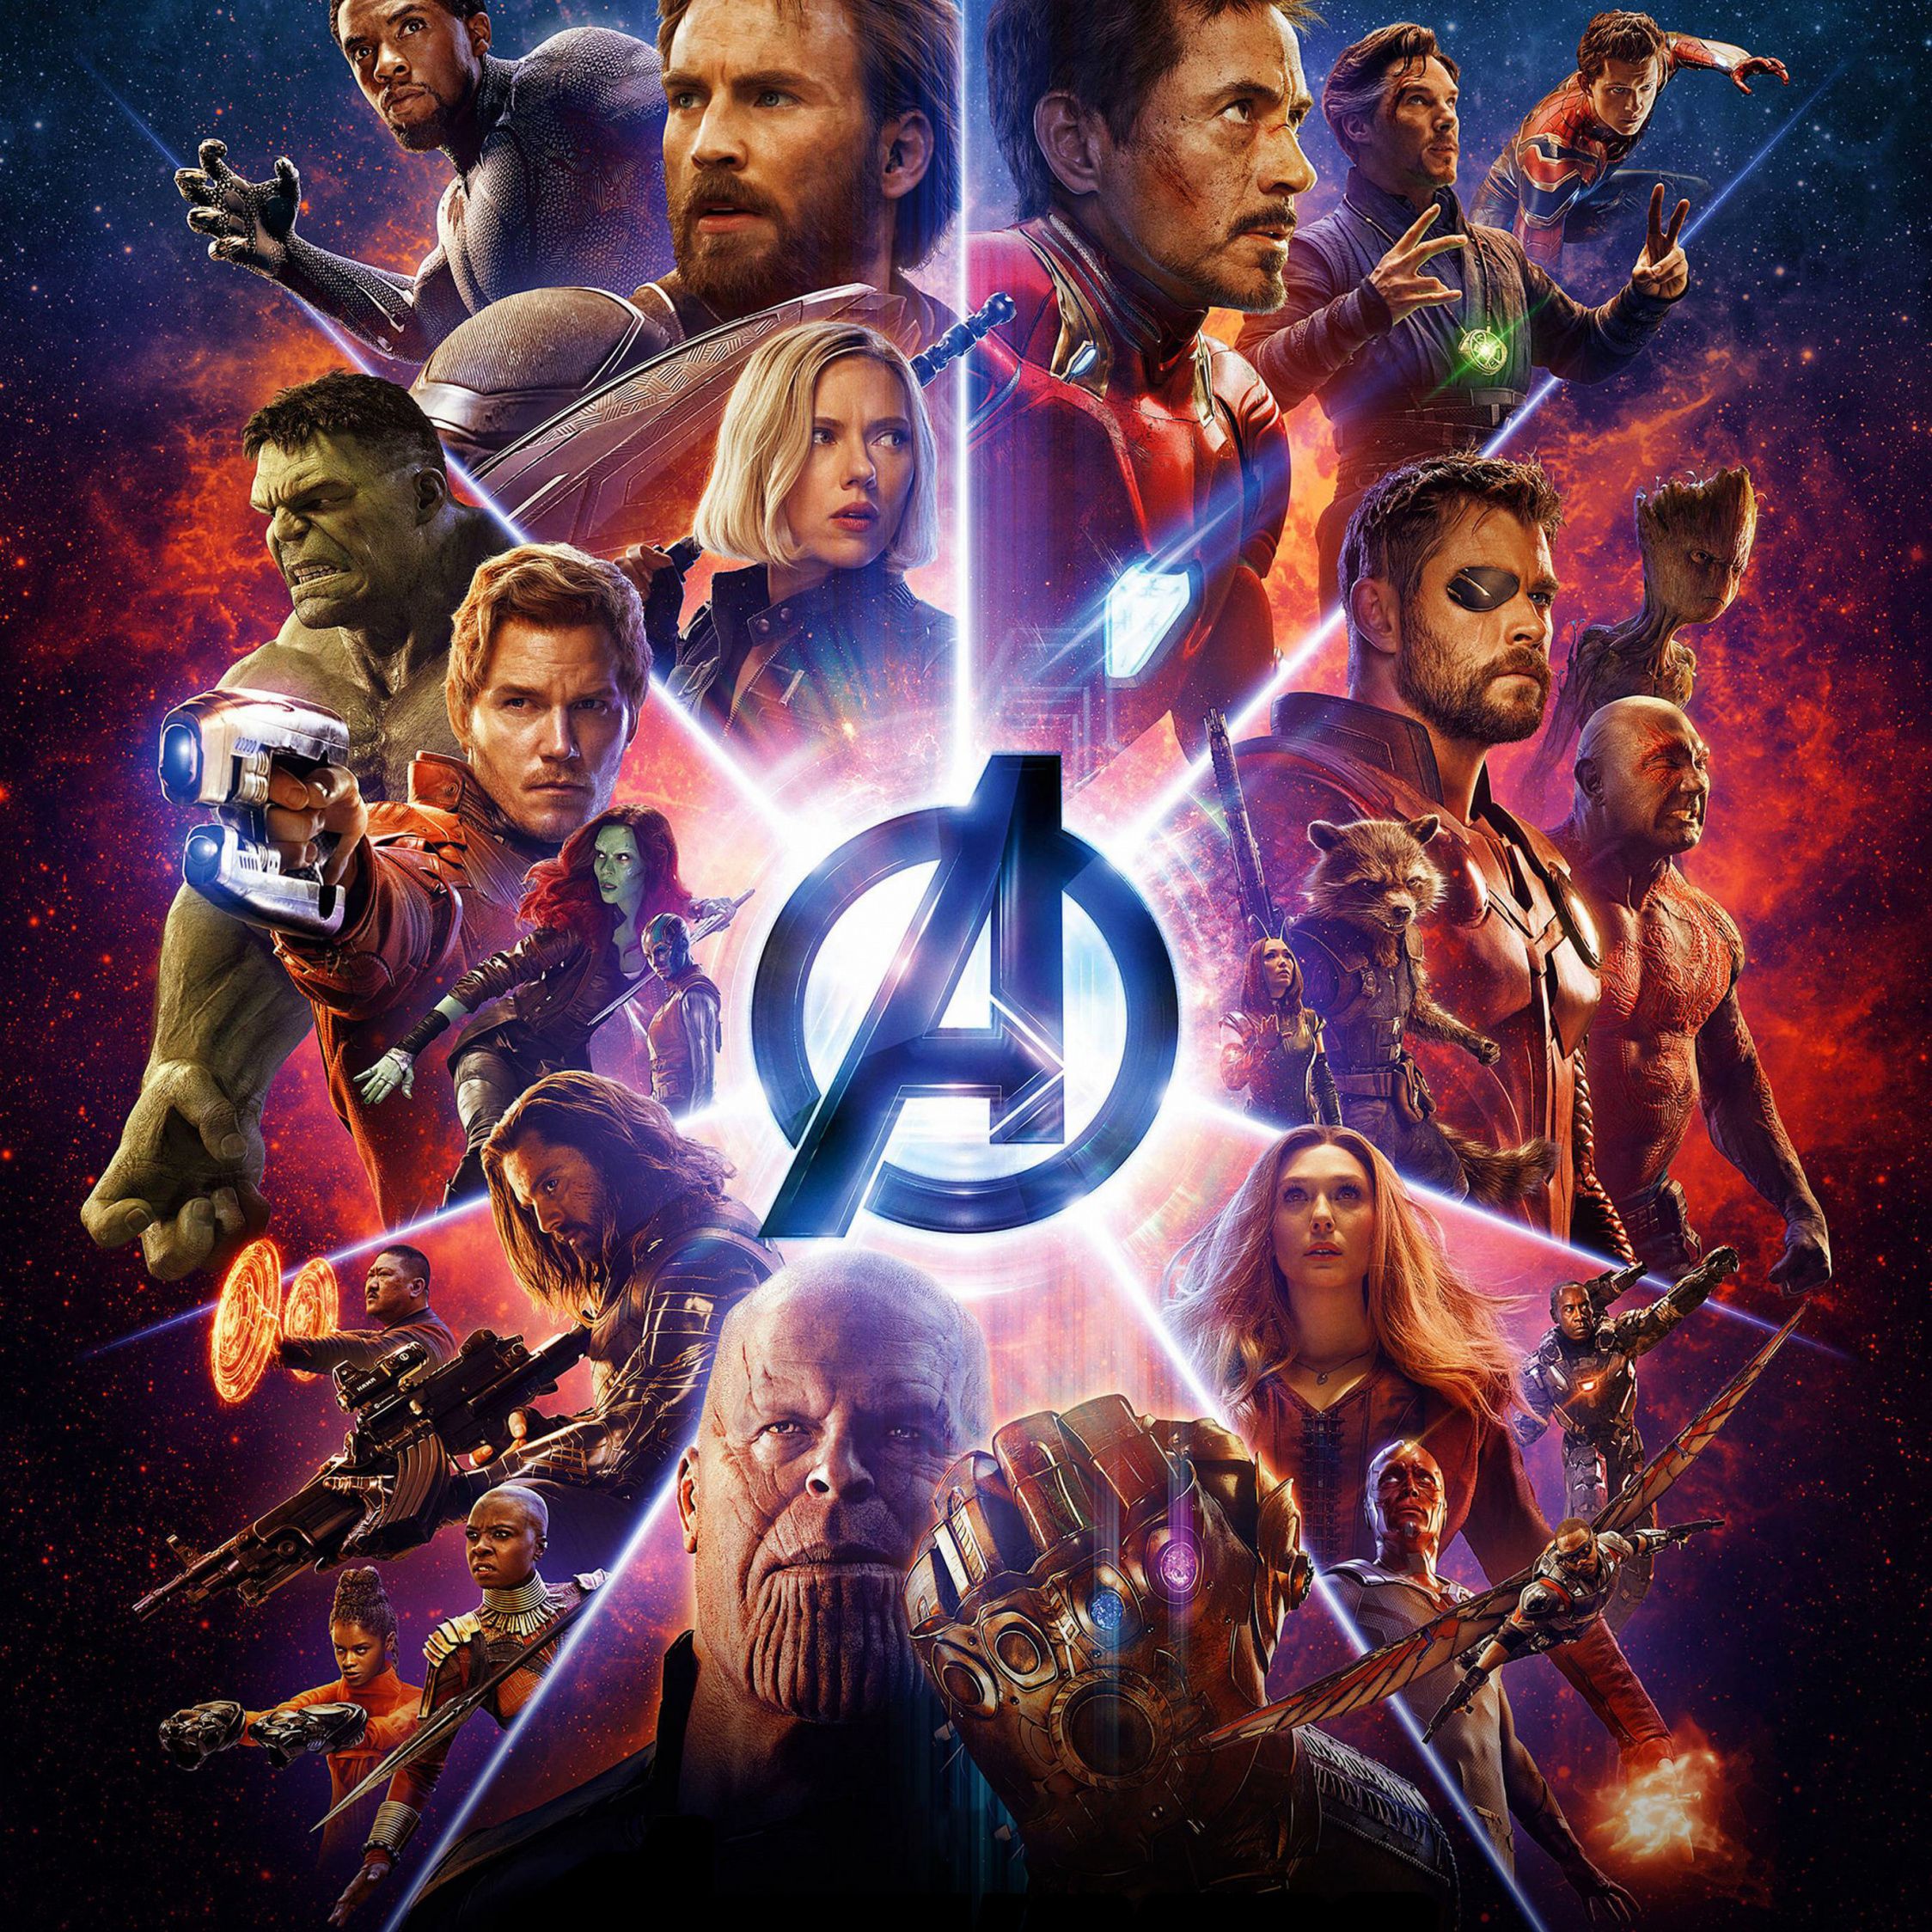 Download Wallpaper Avengers - Avengers Endgame 2019 Poster , HD Wallpaper & Backgrounds